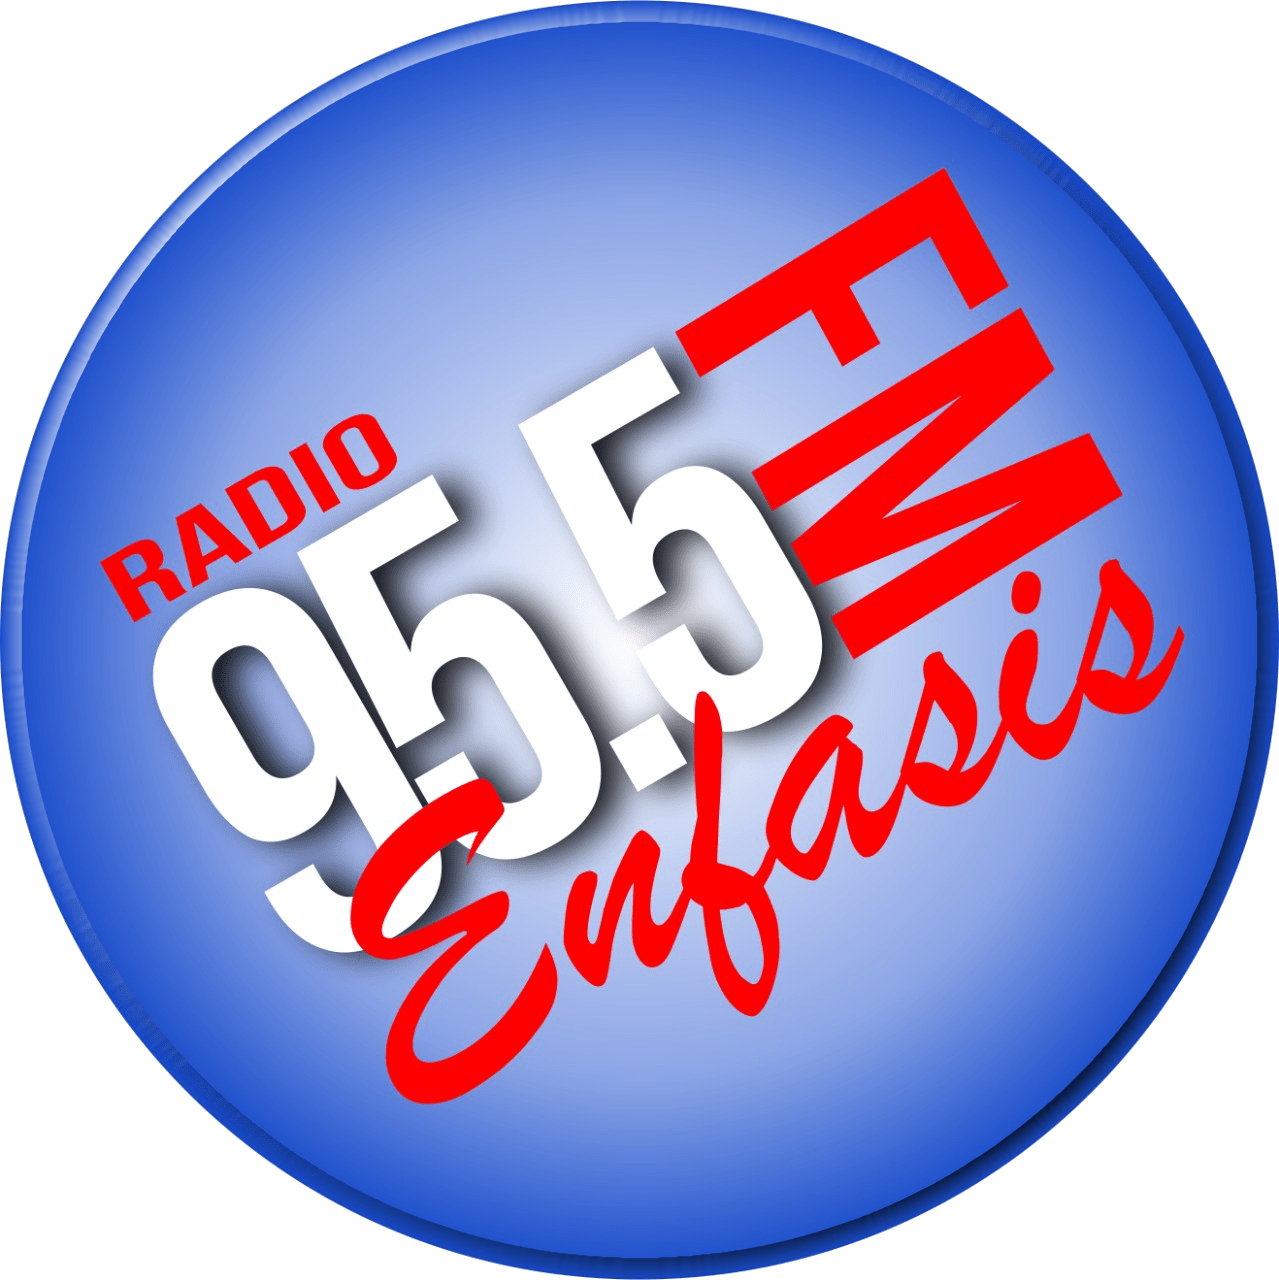 Radio Enfasis